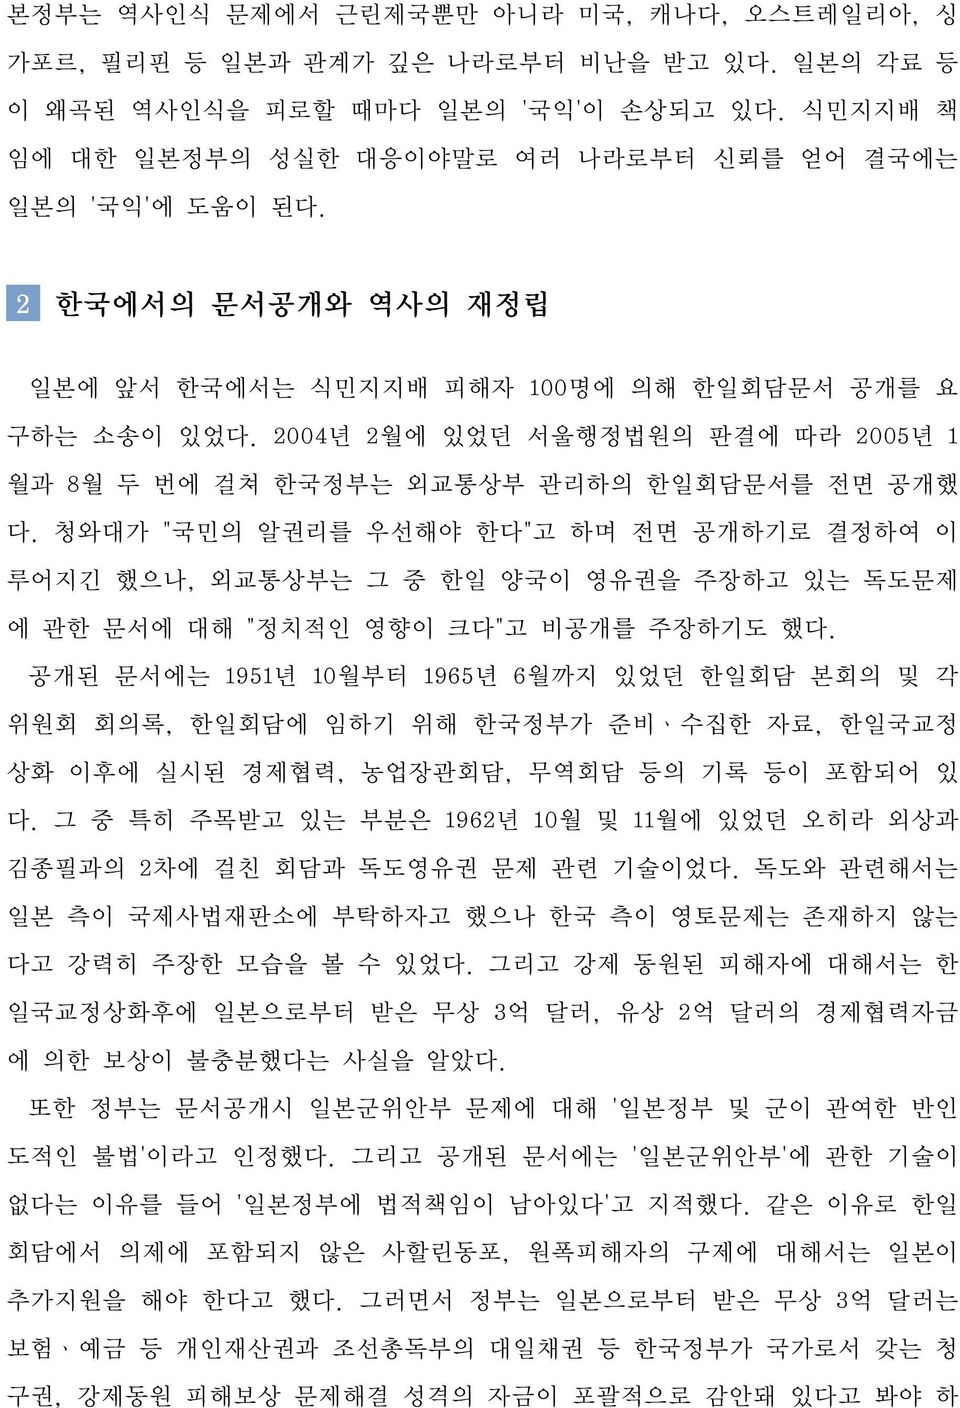 2004년 2월에 있었던 서울행정법원의 판결에 따라 2005년 1 월과 8월 두 번에 걸쳐 한국정부는 외교통상부 관리하의 한일회담문서를 전면 공개했 다.